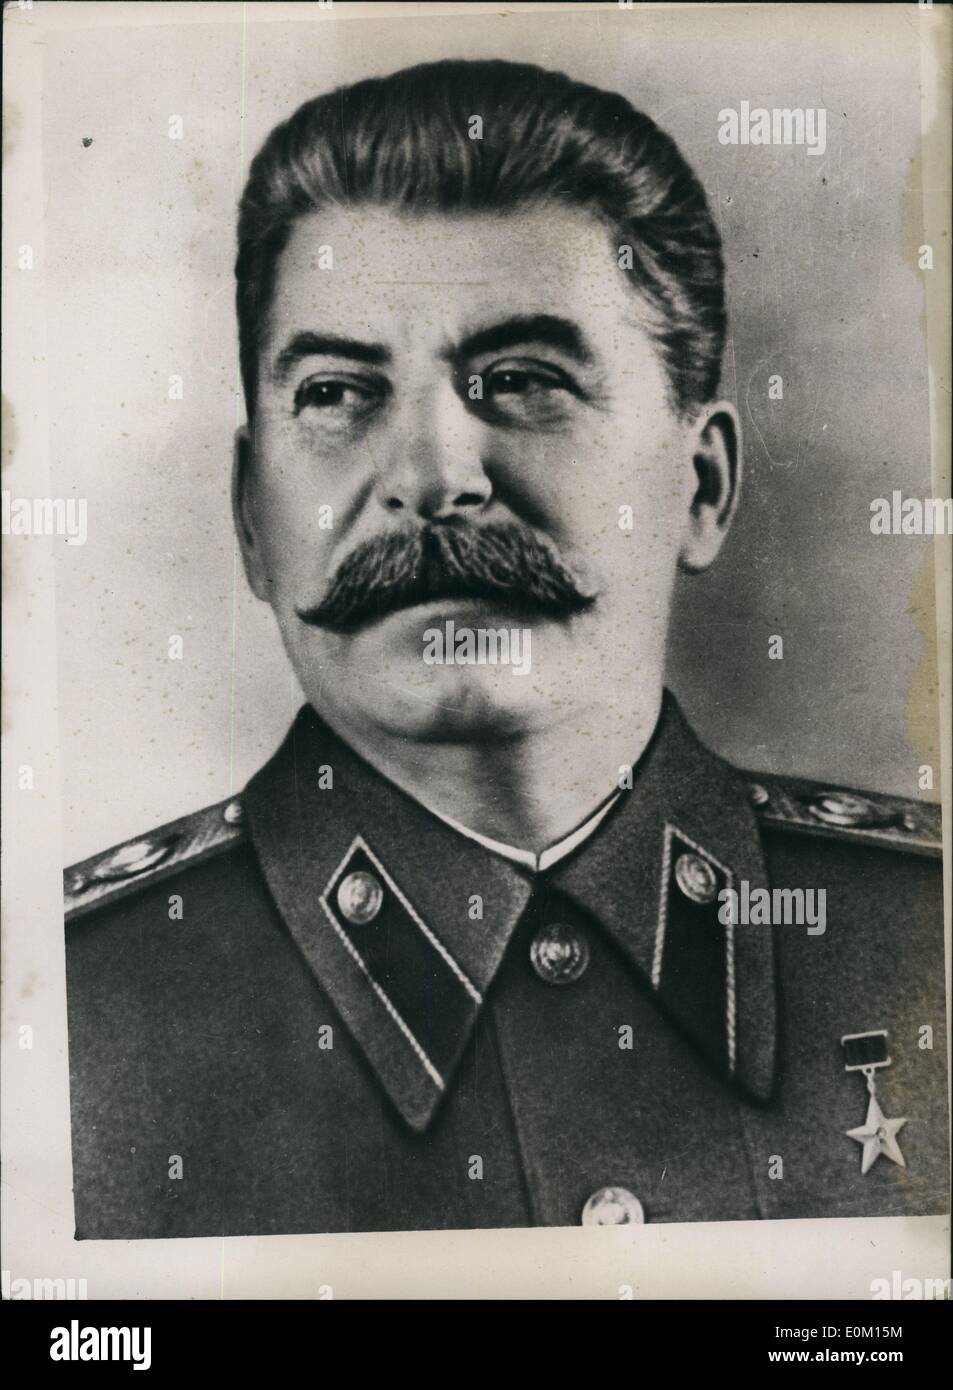 Mar 03, 1953 - Il Maresciallo Stalin gravemente malato al Cremlino in coma a seguito di corsa. La foto mostra il ritratto del Maresciallo Stalin che è segnalato per essere in coma a seguito di un ictus al Cremlino. Foto Stock